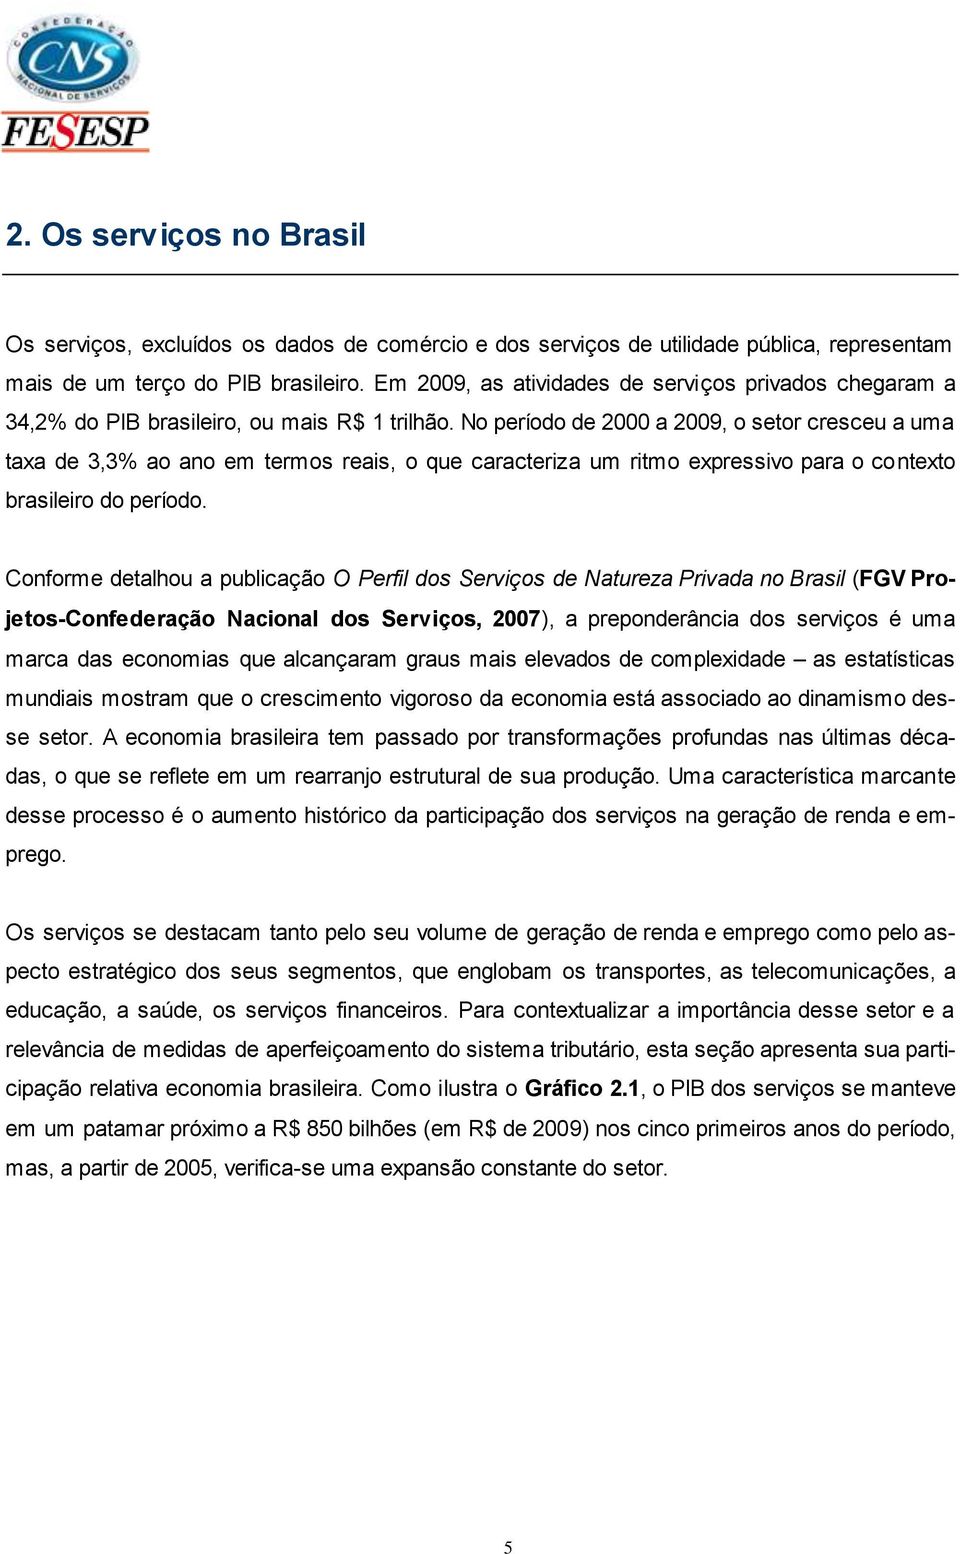 No período de 2000 a 2009, o setor cresceu a uma taxa de 3,3% ao ano em termos reais, o que caracteriza um ritmo expressivo para o contexto brasileiro do período.